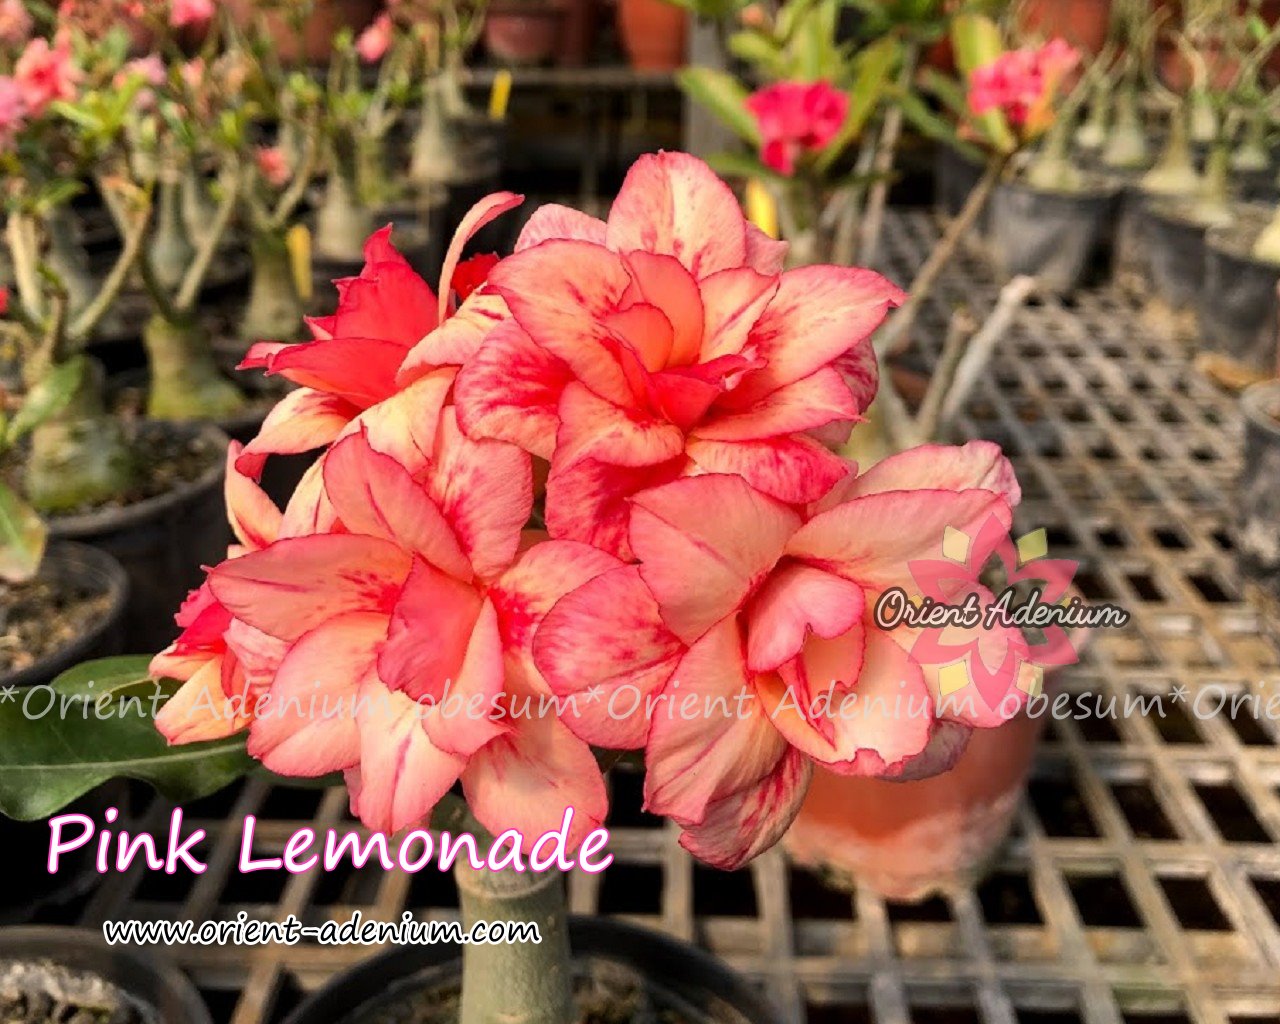 Adenium obesum Pink Lemonade Grafted plant - Orient Adenium online store